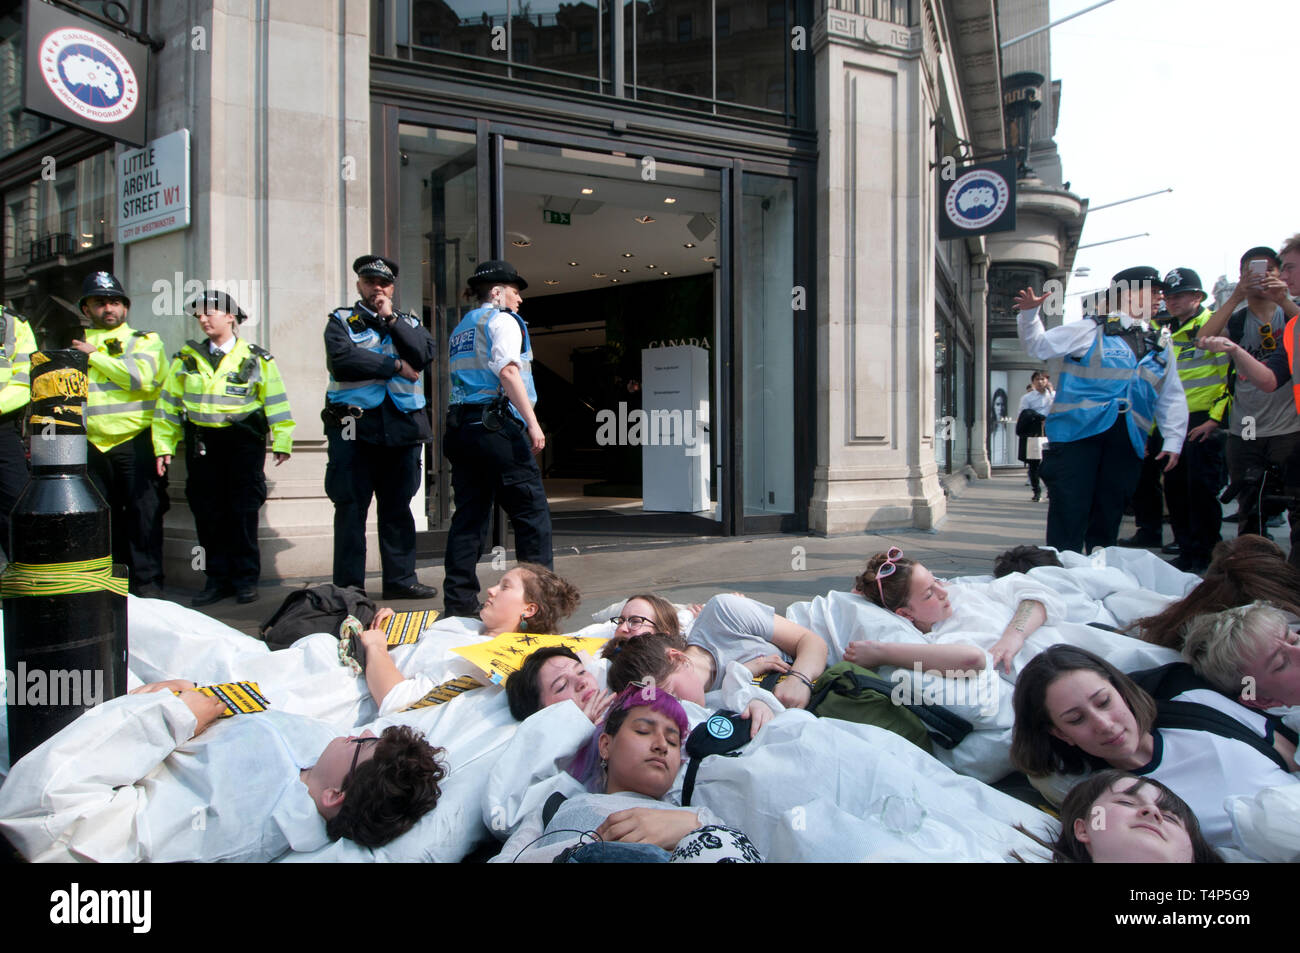 Rébellion Extinction protestation, Londres 17 septembre 2019. Regent Street. Les jeunes meurent dans l'étape de port haz chem suits devant les magasins de dessiner Banque D'Images